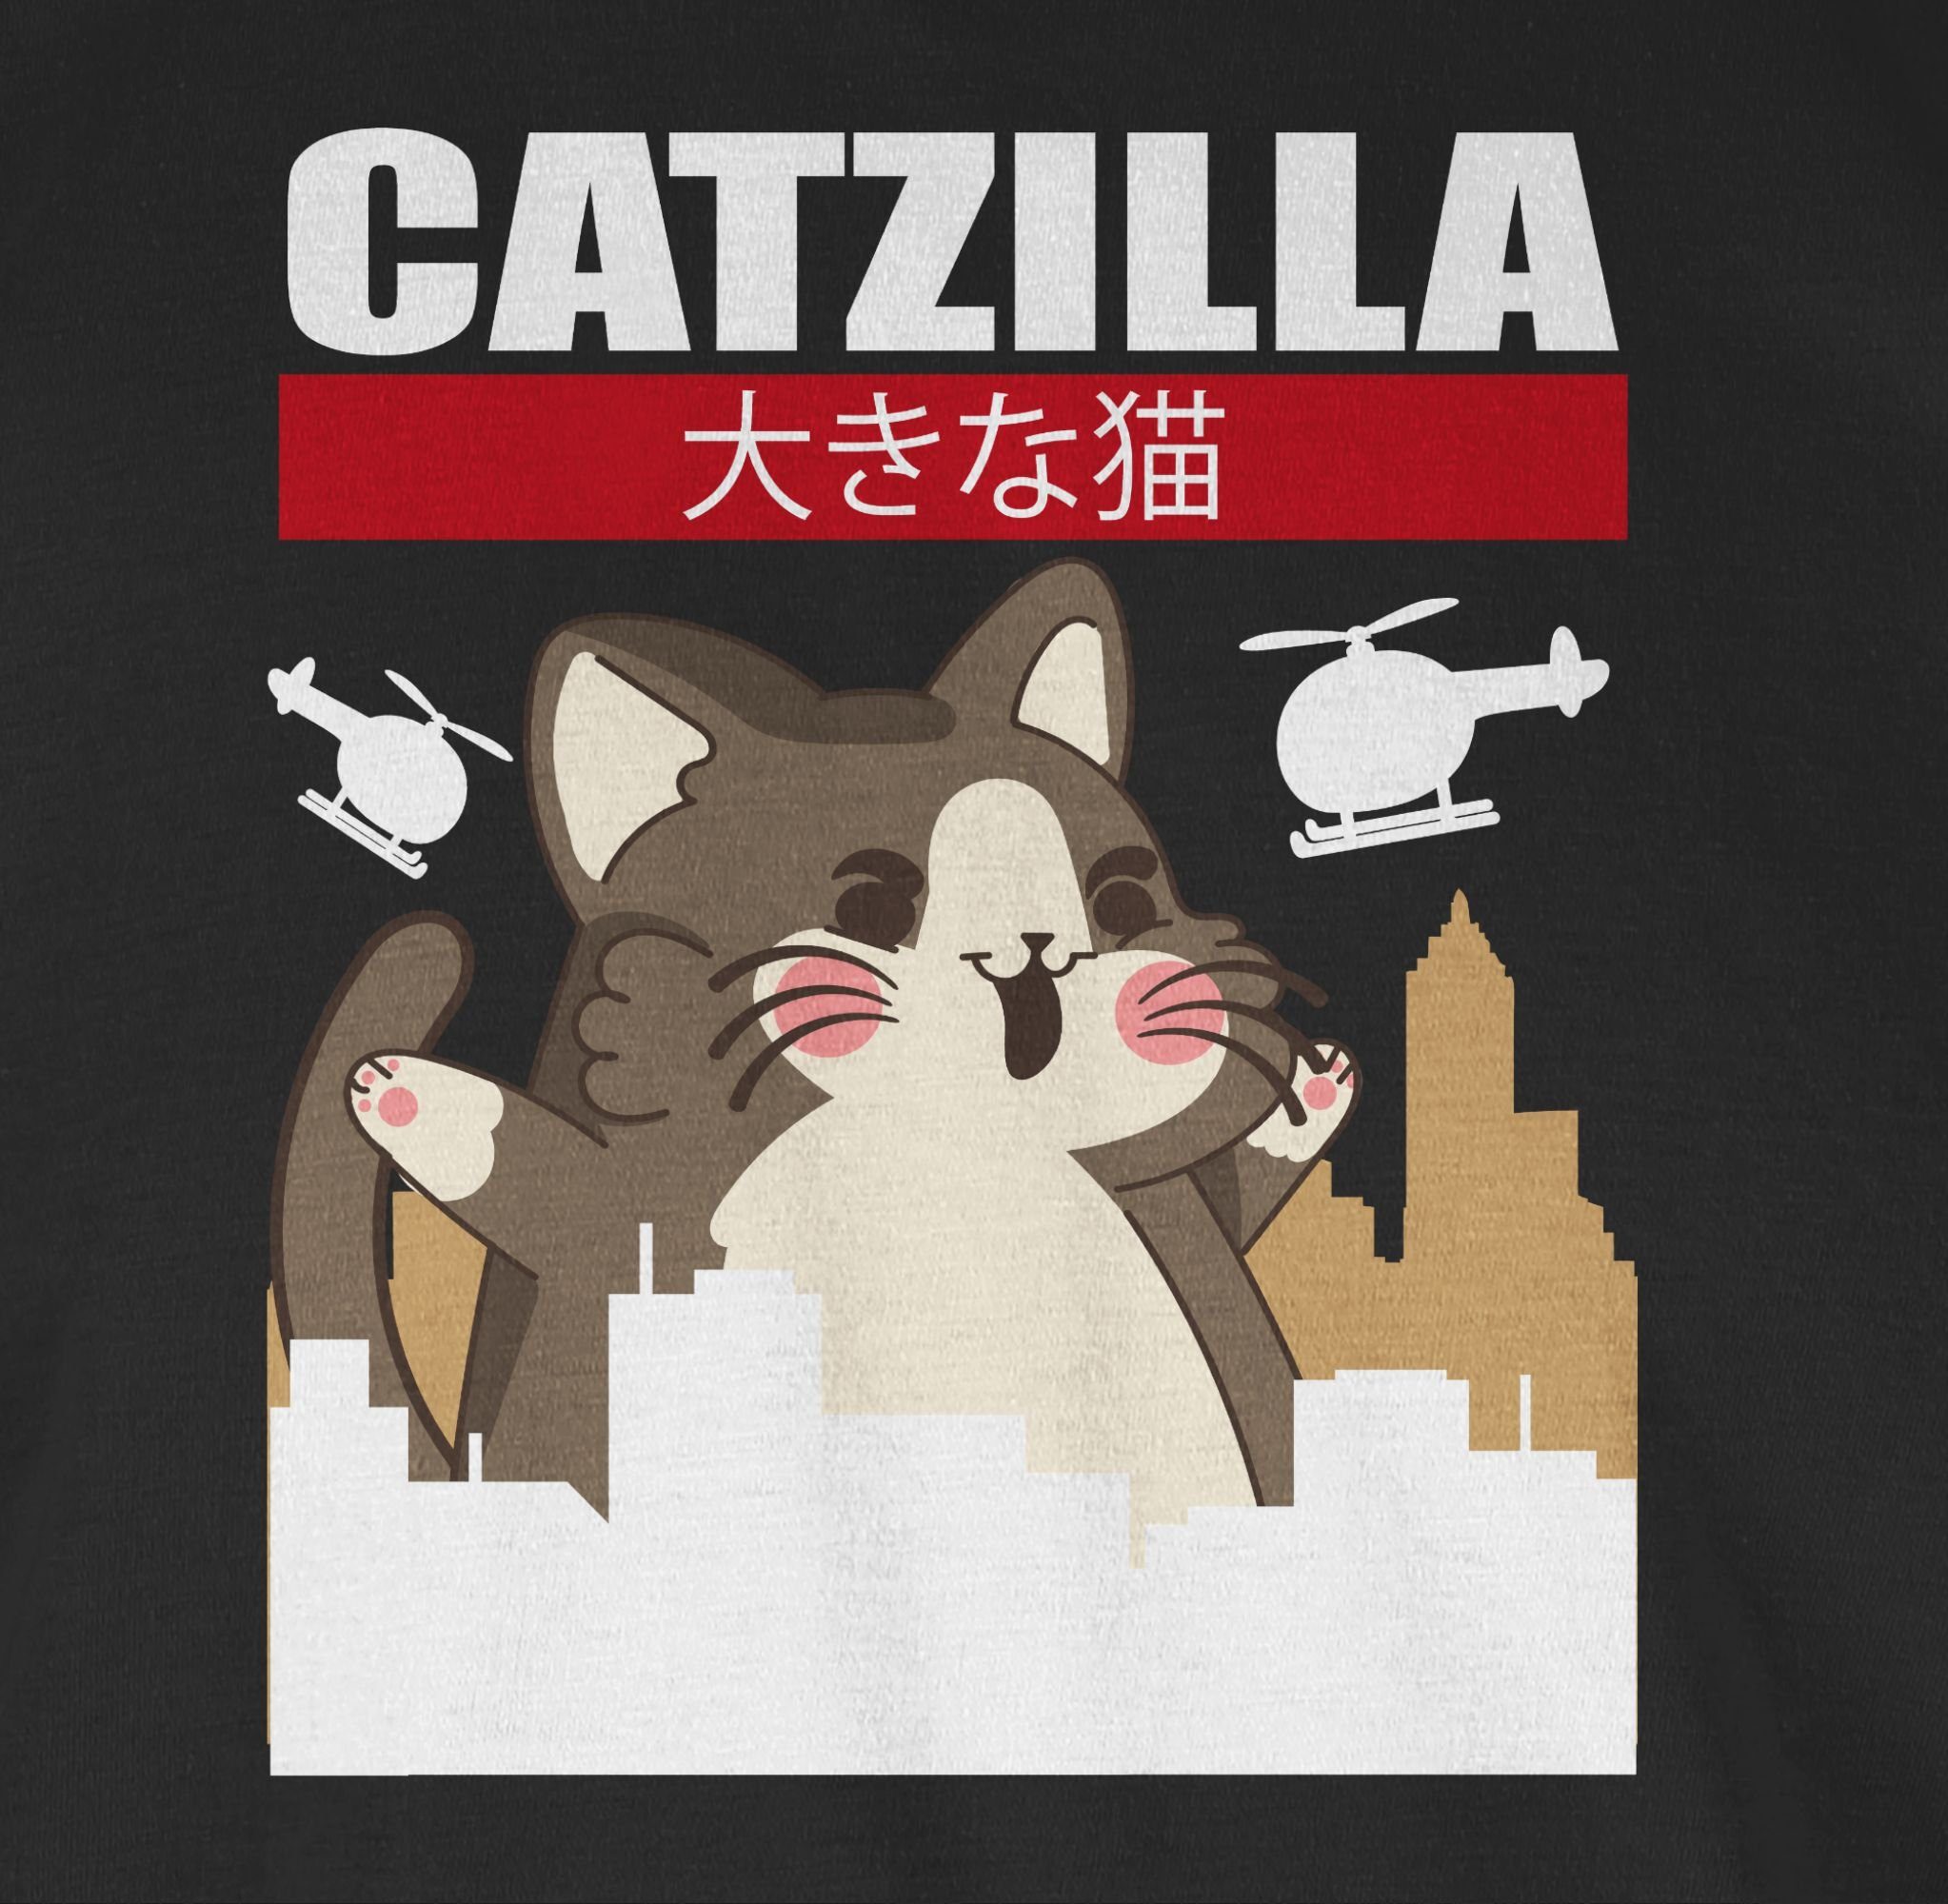 Geschenke T-Shirt Big 1 Cat Shirtracer Anime - Catzilla Schwarz